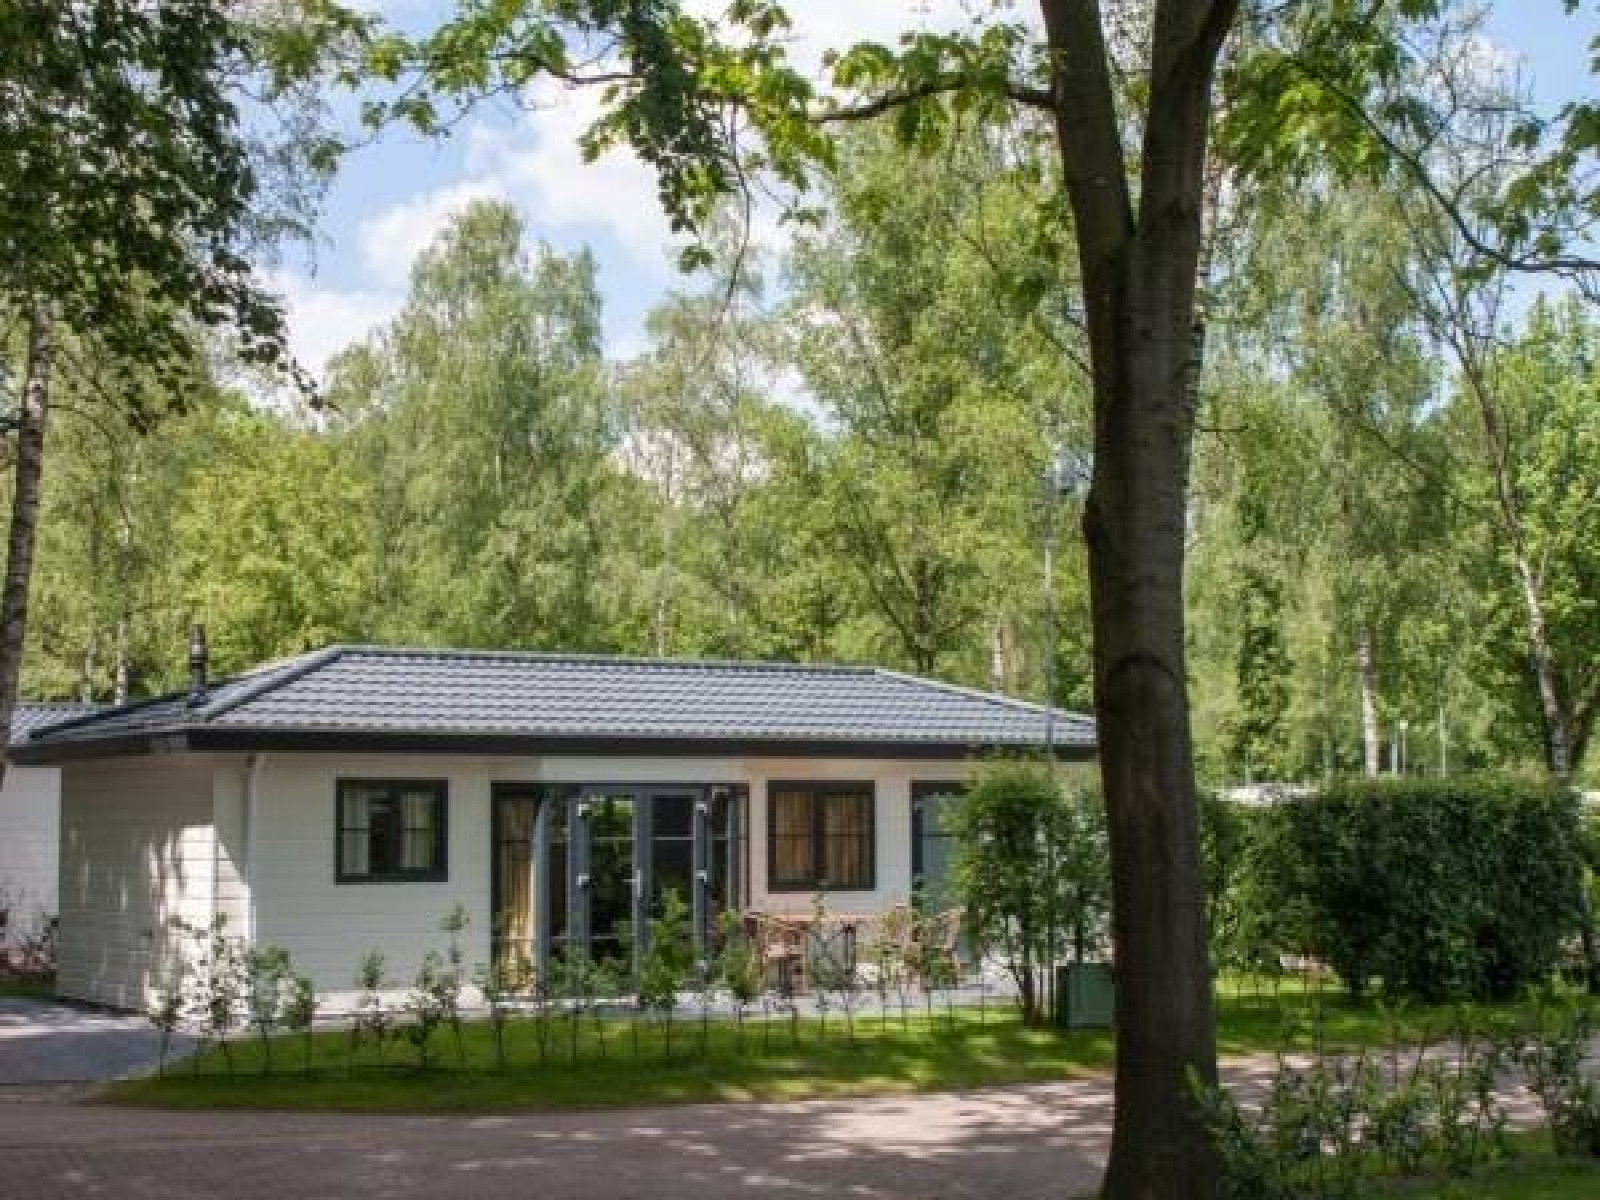 Luxe bungalow voor 6 personen op familiepark. - Nederland - Europa - De-Bult